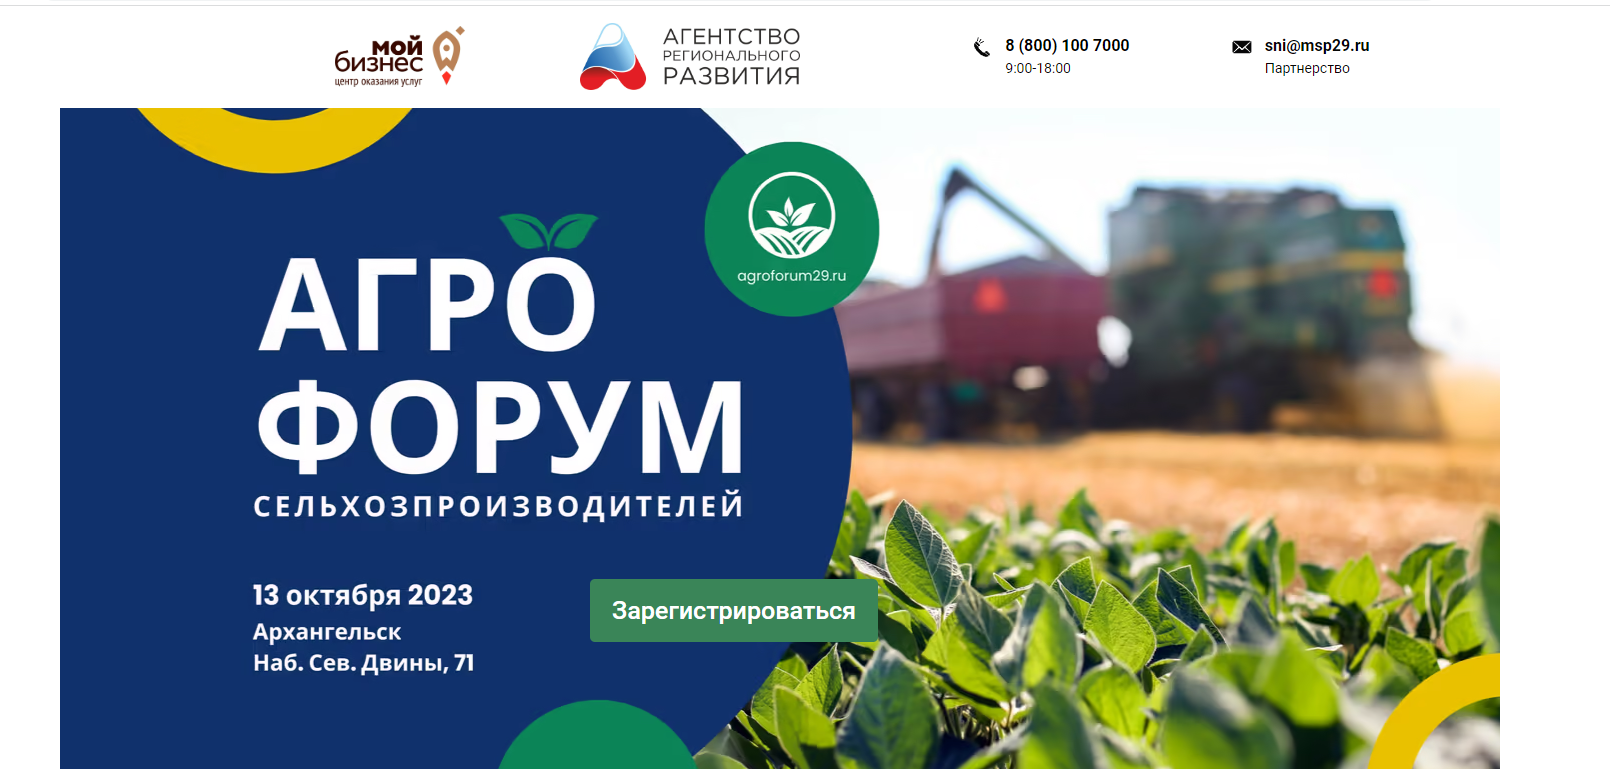 В Архангельской области состоится большой агрофорум сельхозпроизводителей 